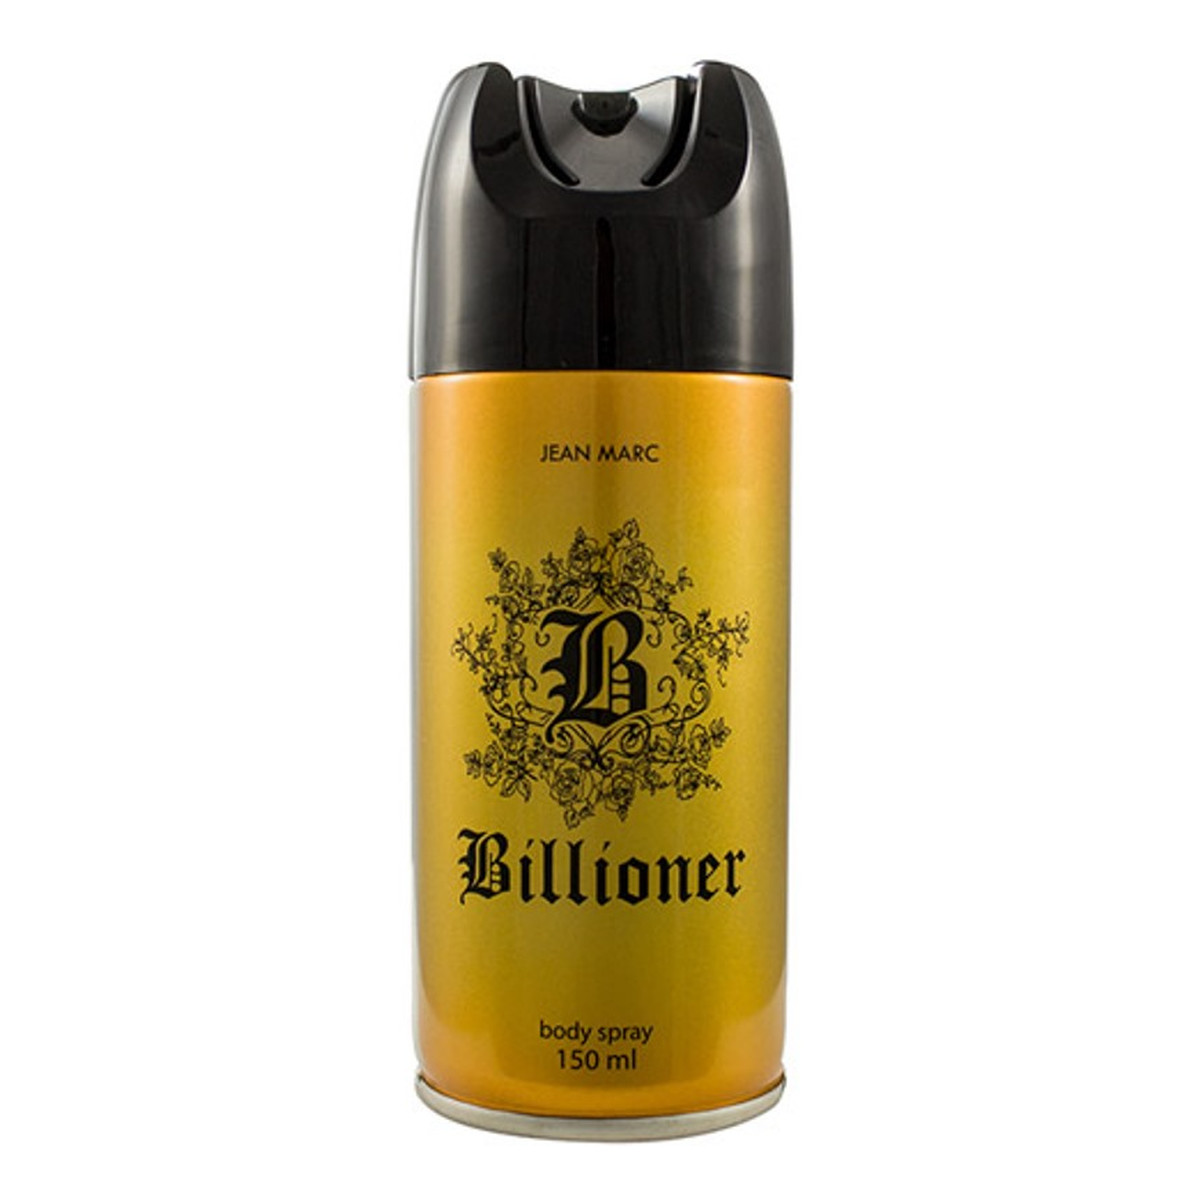 Jean Marc Billioner dezodorant 150ml